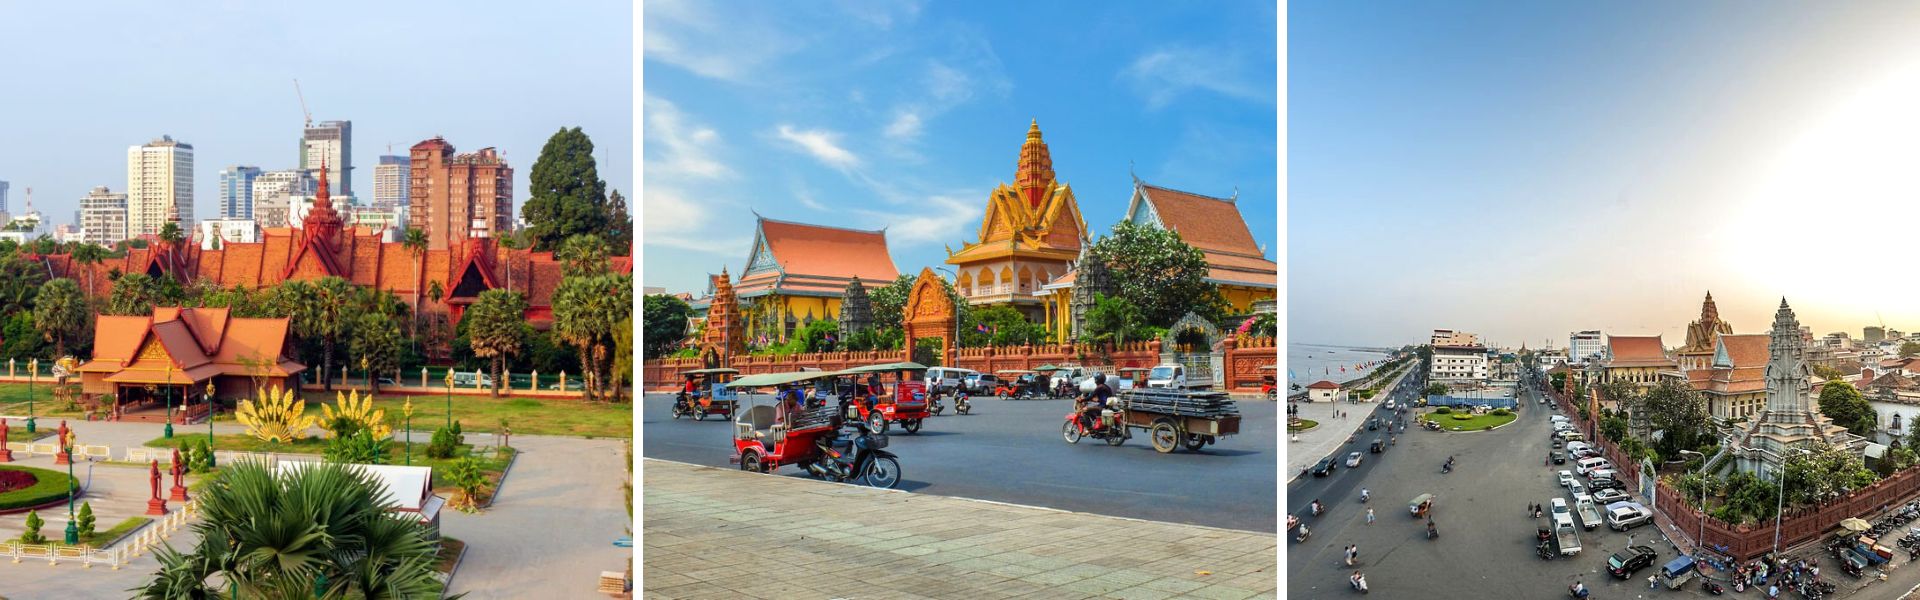 08 fatti interessanti su Phnom Penh